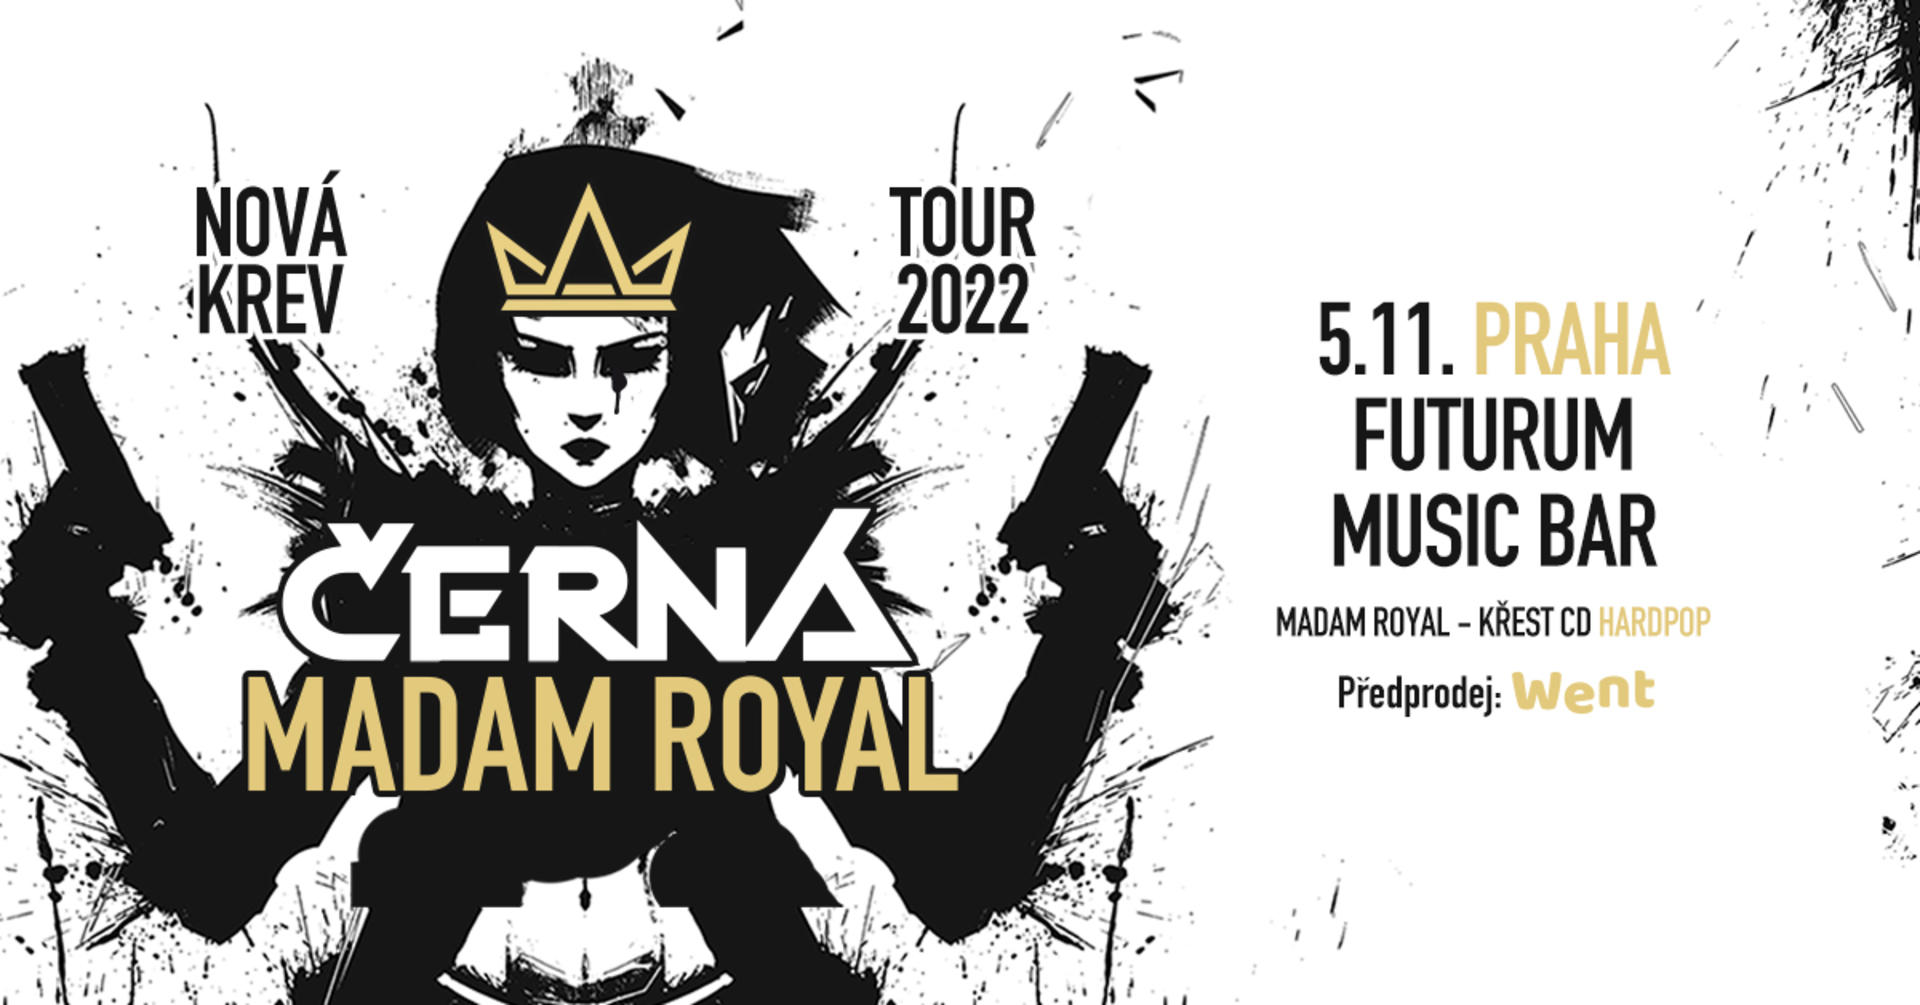 NOVÁ KREV TOUR 22: Černá, Madam Royal, Křest CD HARDPOP